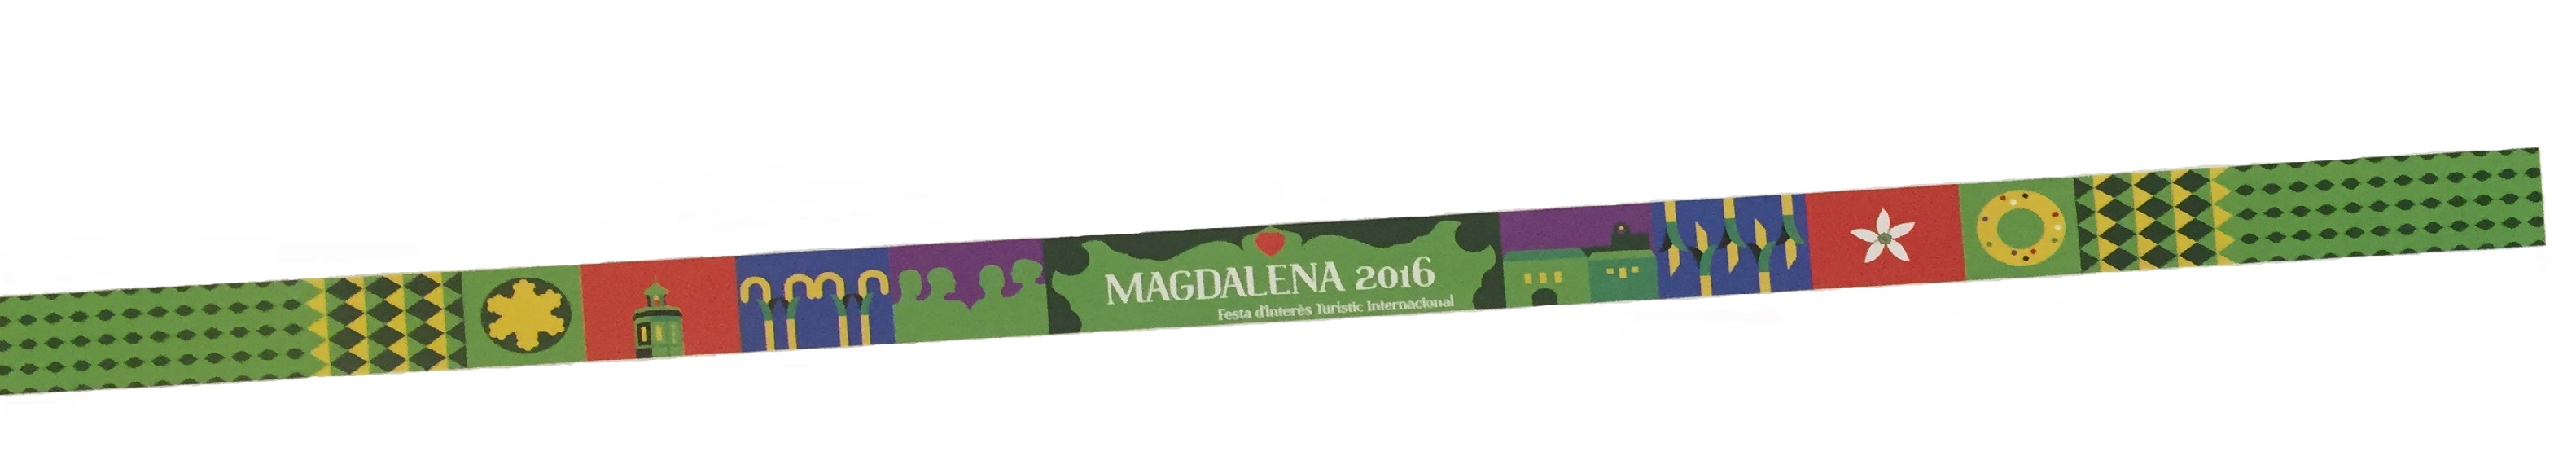 pulsera magdalena 2016.jpg